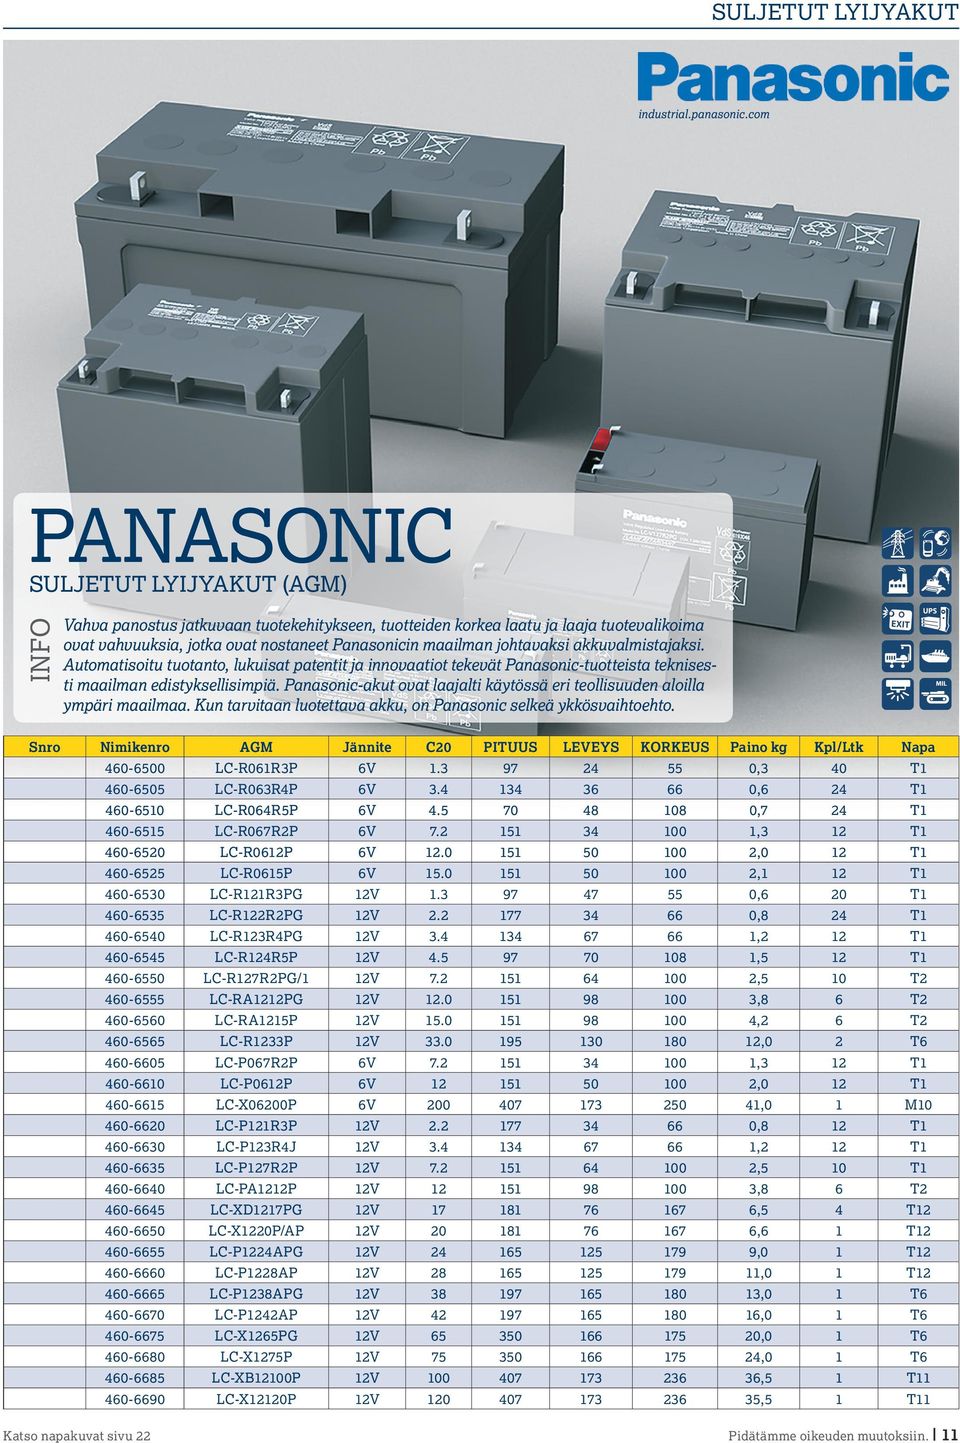 akkuvalmistajaksi. Automatisoitu tuotanto, lukuisat patentit ja innovaatiot tekevät Panasonic-tuotteista teknisesti maailman edistyksellisimpiä.